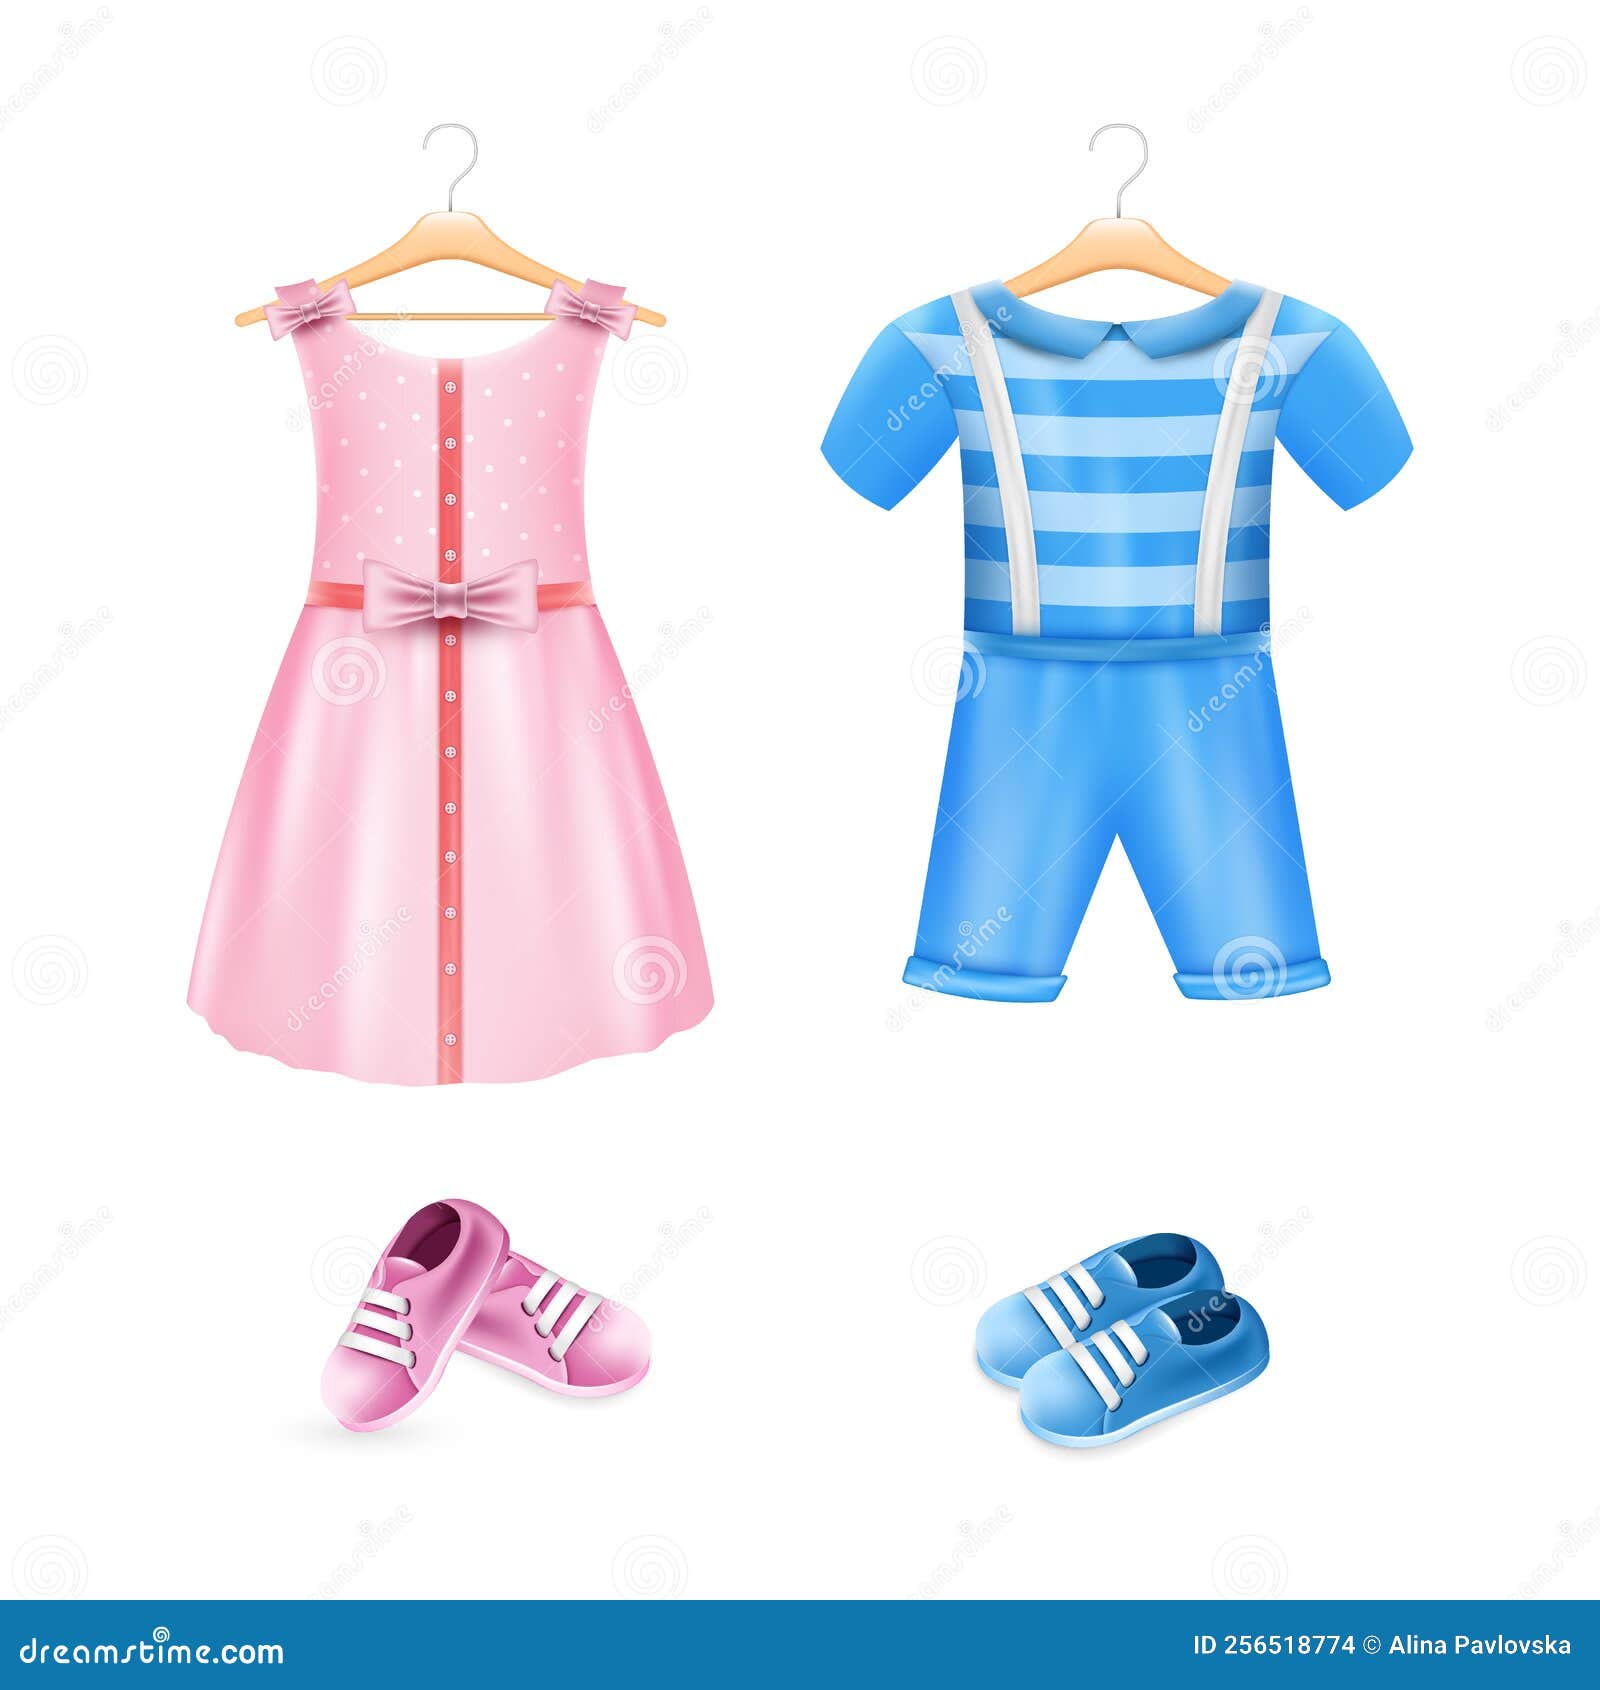 Vestido de niña rosa, disfraz de cumpleaños para niños pequeños, vestido  rosa de cumpleaños, vestido rosa para sesiones de fotos de niños pequeños